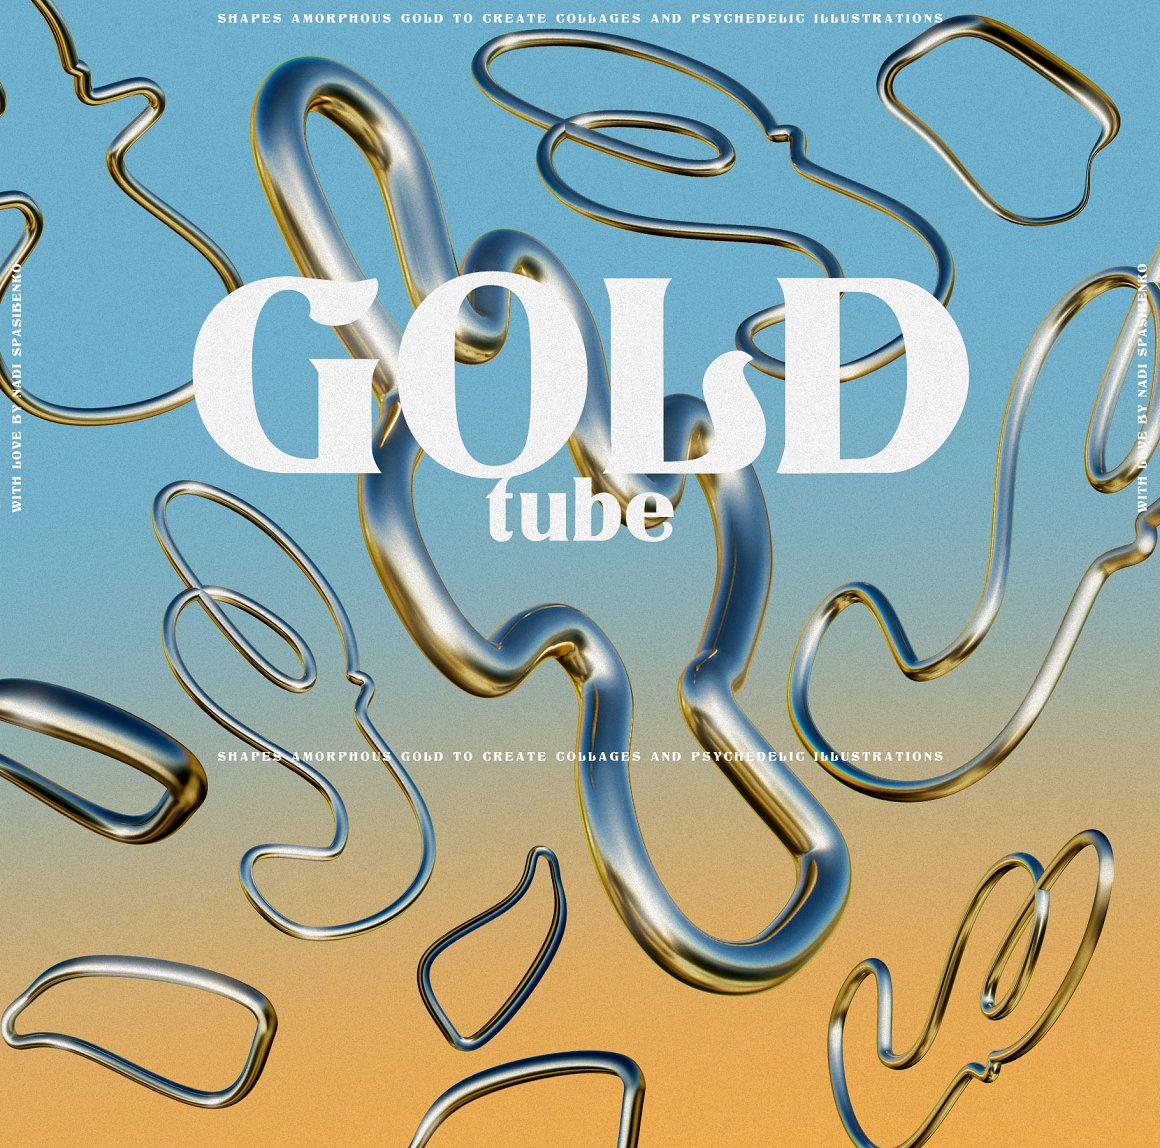 抽象艺术酸性液态3d迷幻黄金形状背景海报PBG素材包 Amorphous Liquid Gold 图片素材 第11张